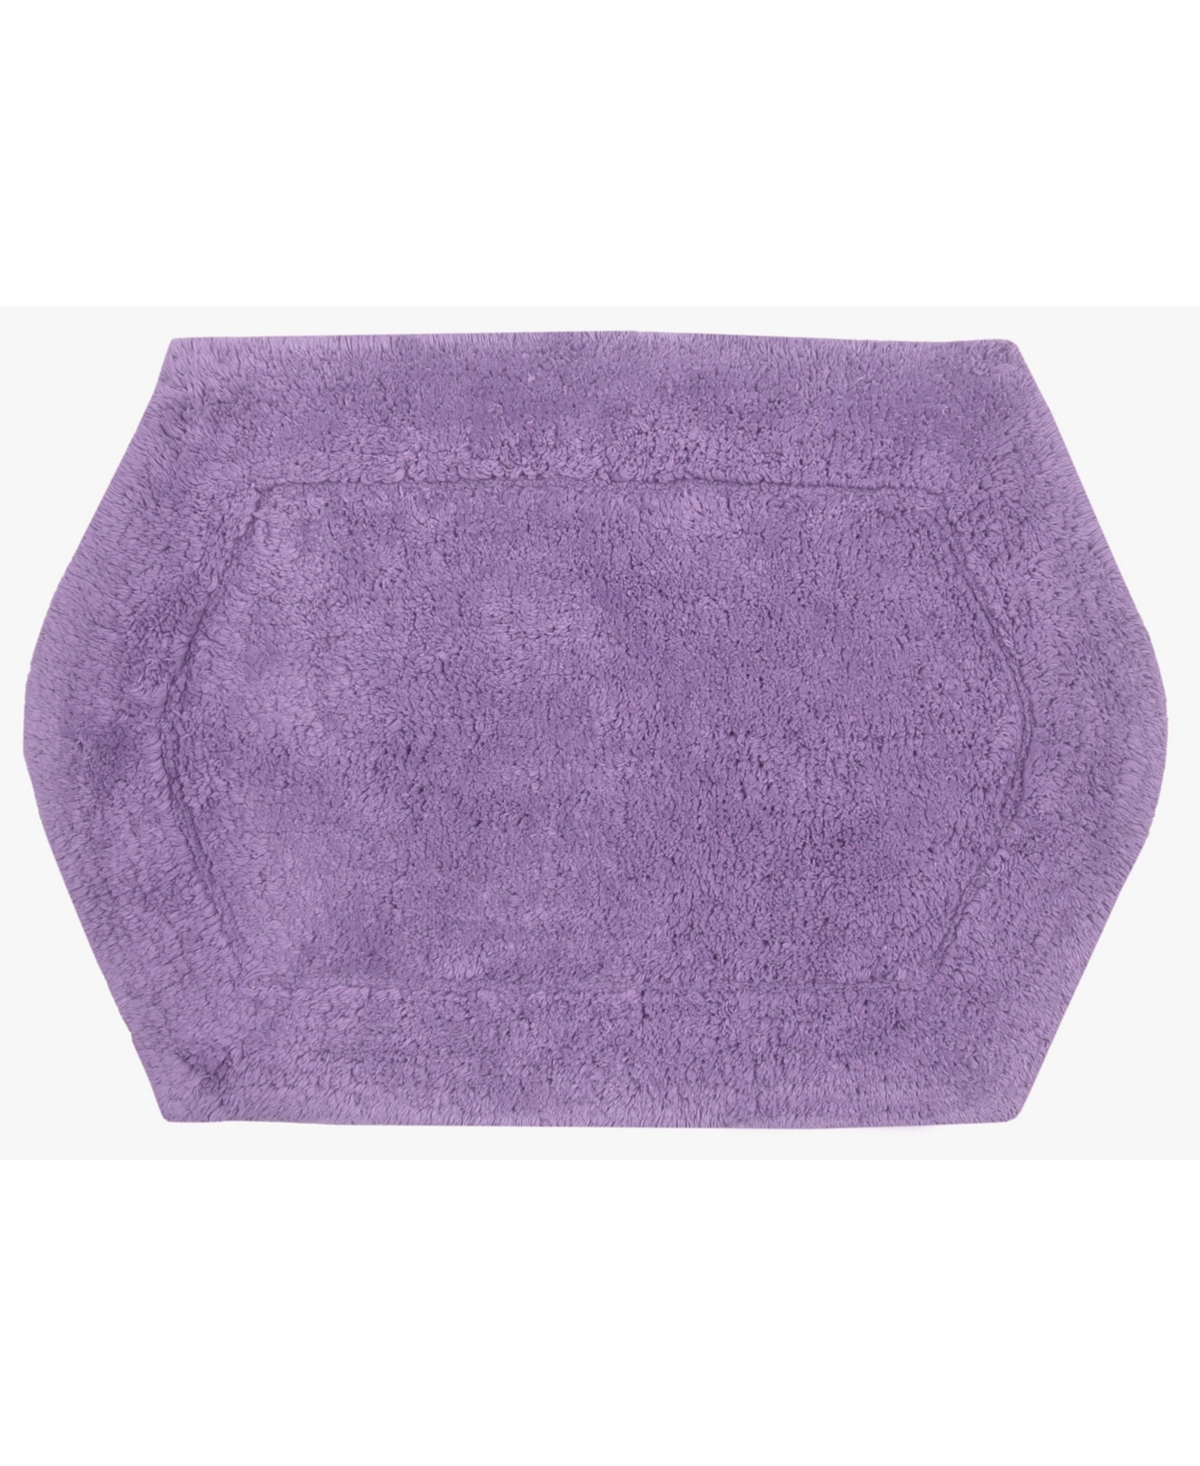 Home Weavers Waterford Bath Rug, 17" X 24" In Purple